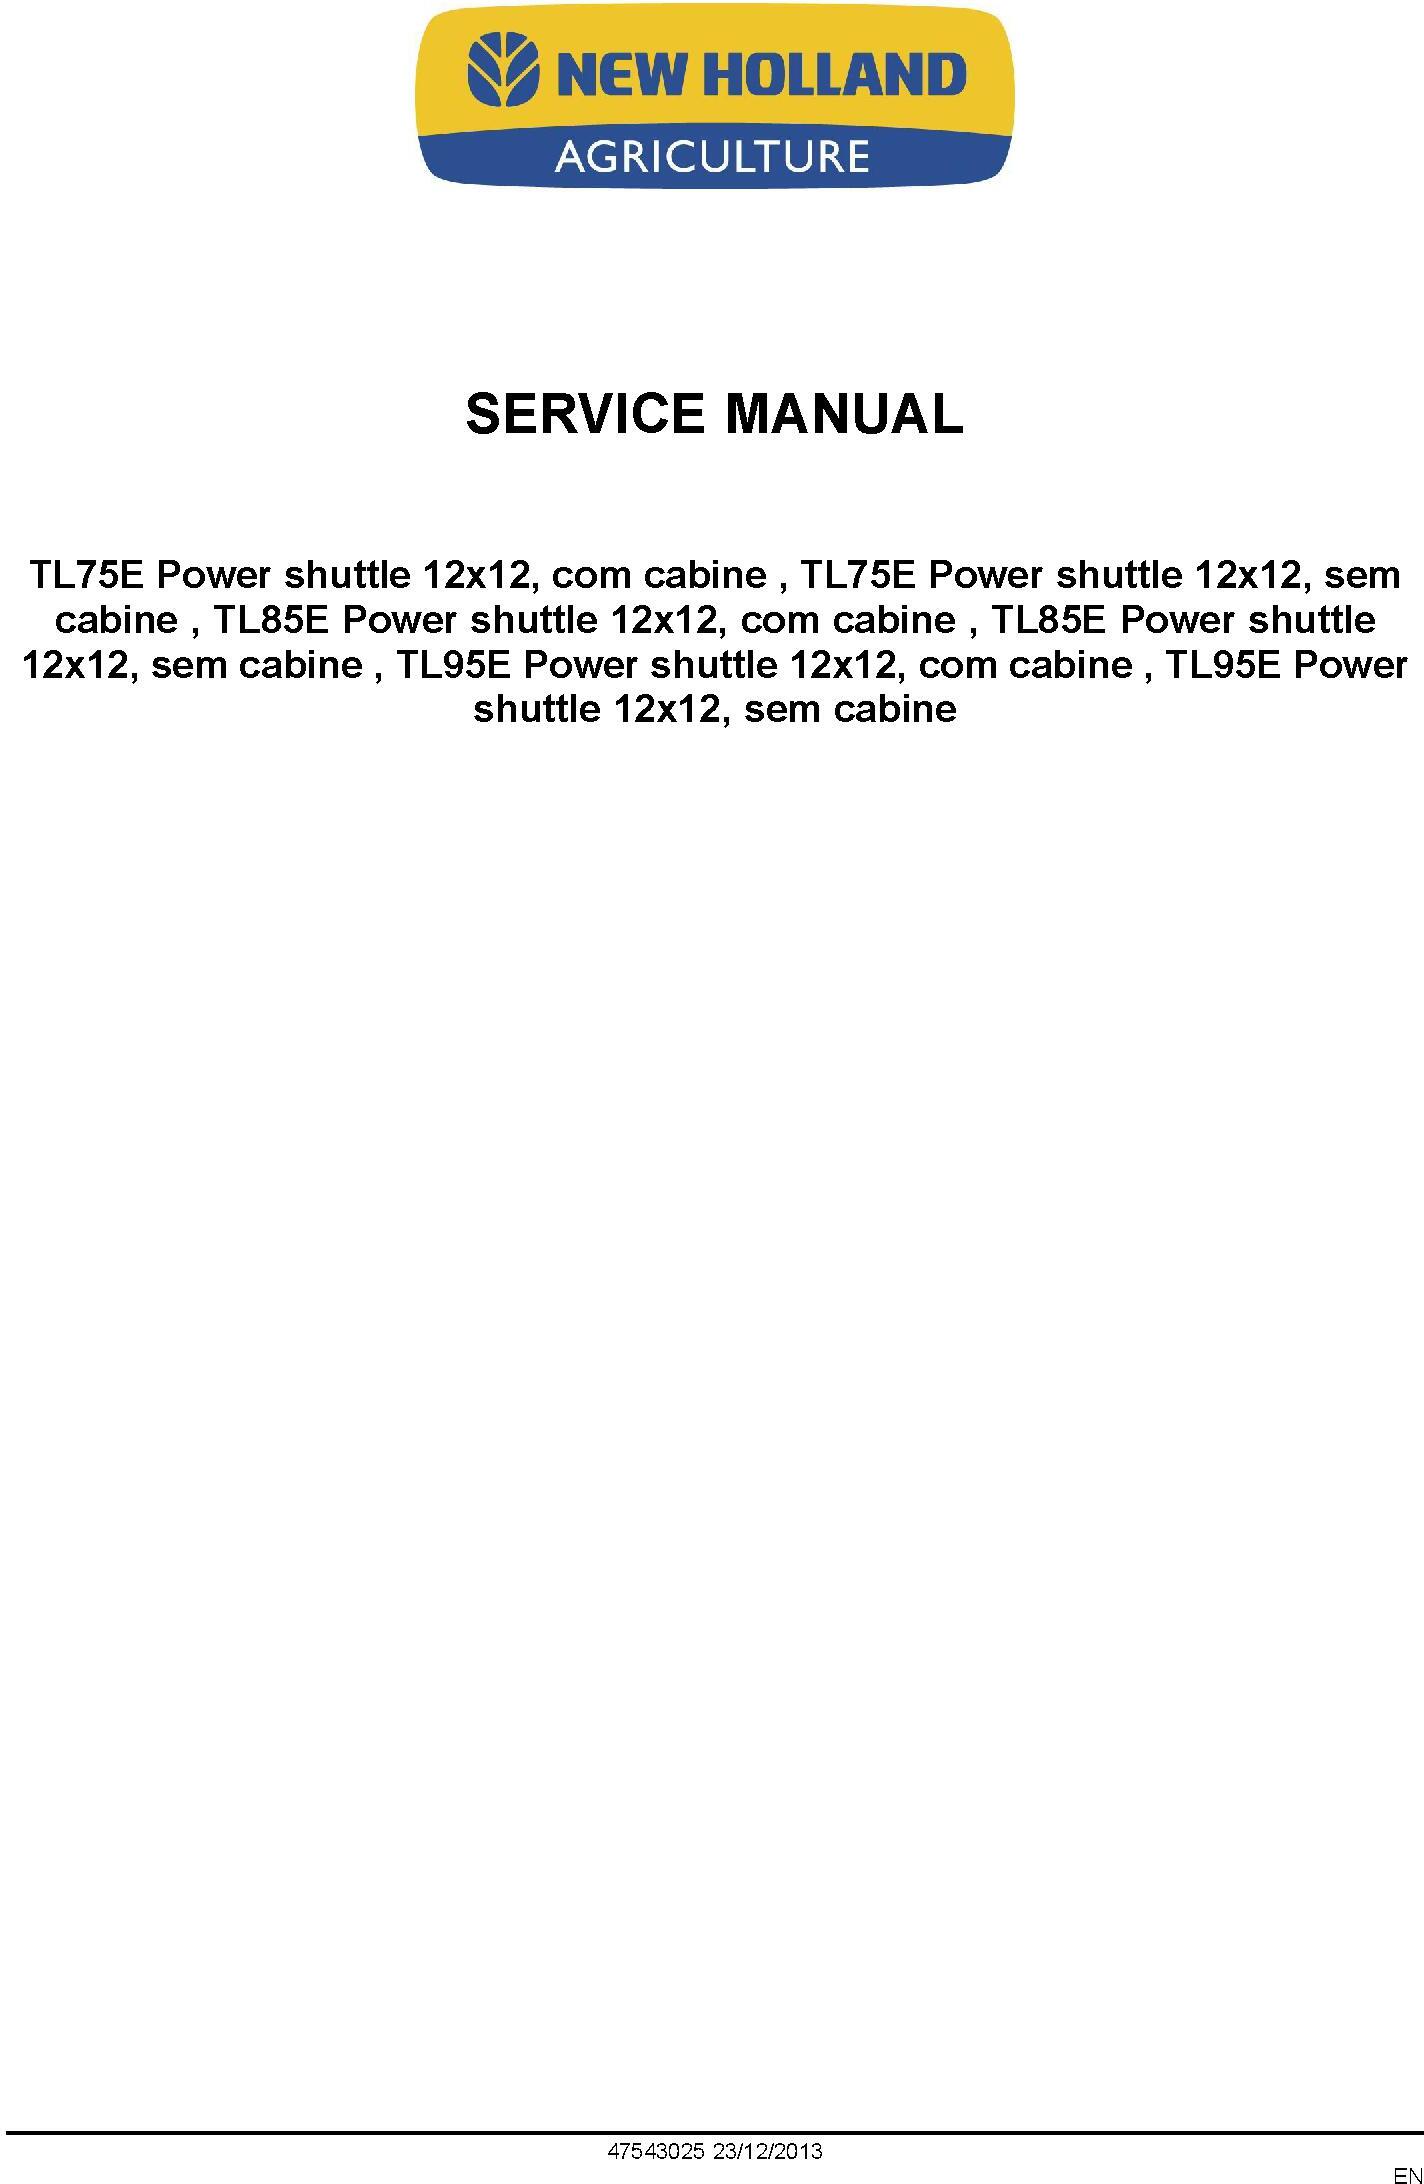 New Holland TL75E, TL85E, TL95E Power Shuttle Latin American Tractor Service Manual